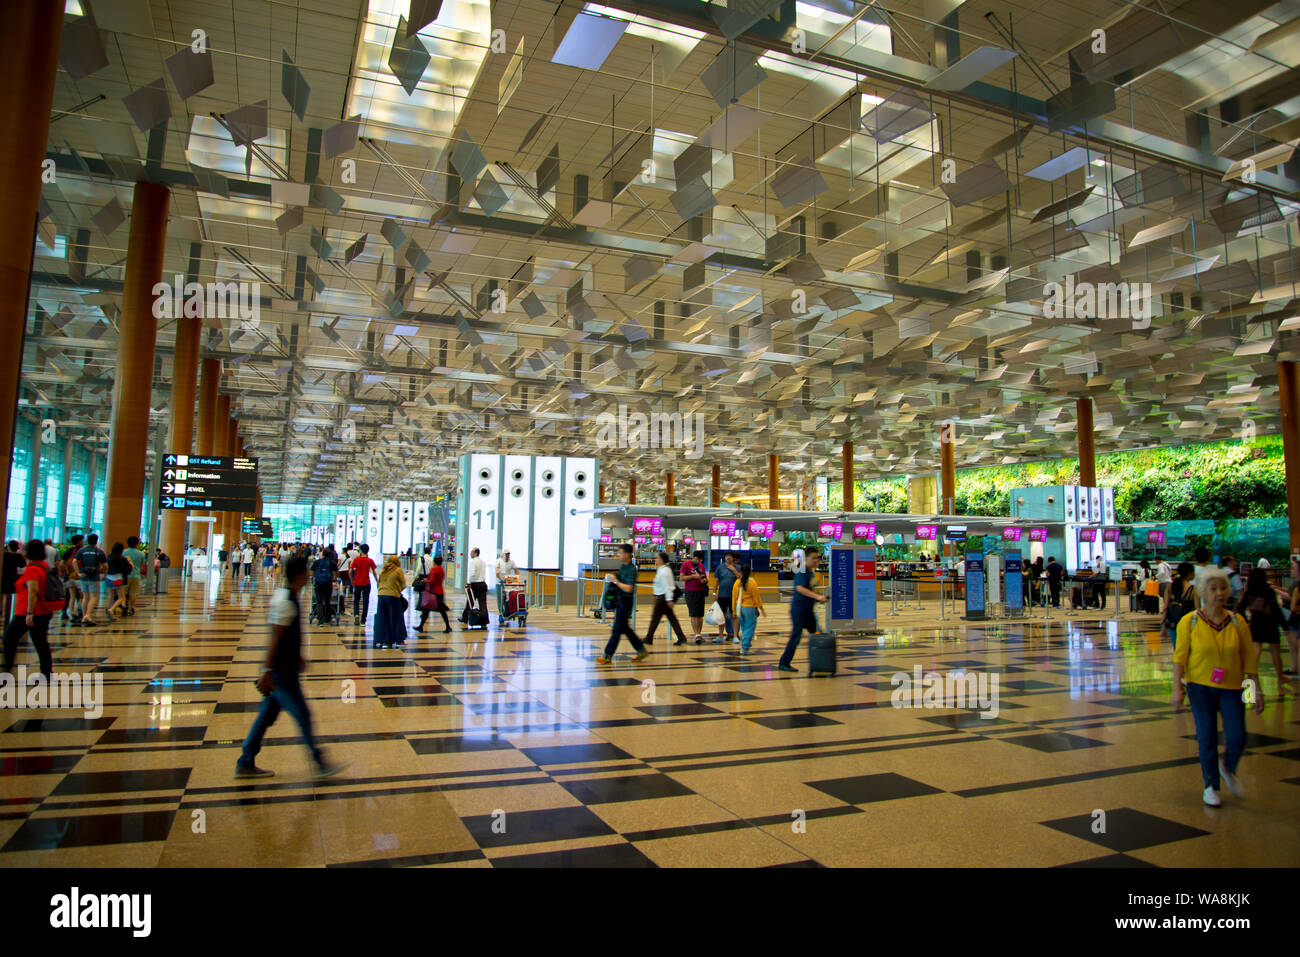 Ciudad de Singapur, Singapur - Abril 14, 2019: terminales de pasajeros en el aeropuerto Changi hall Foto de stock